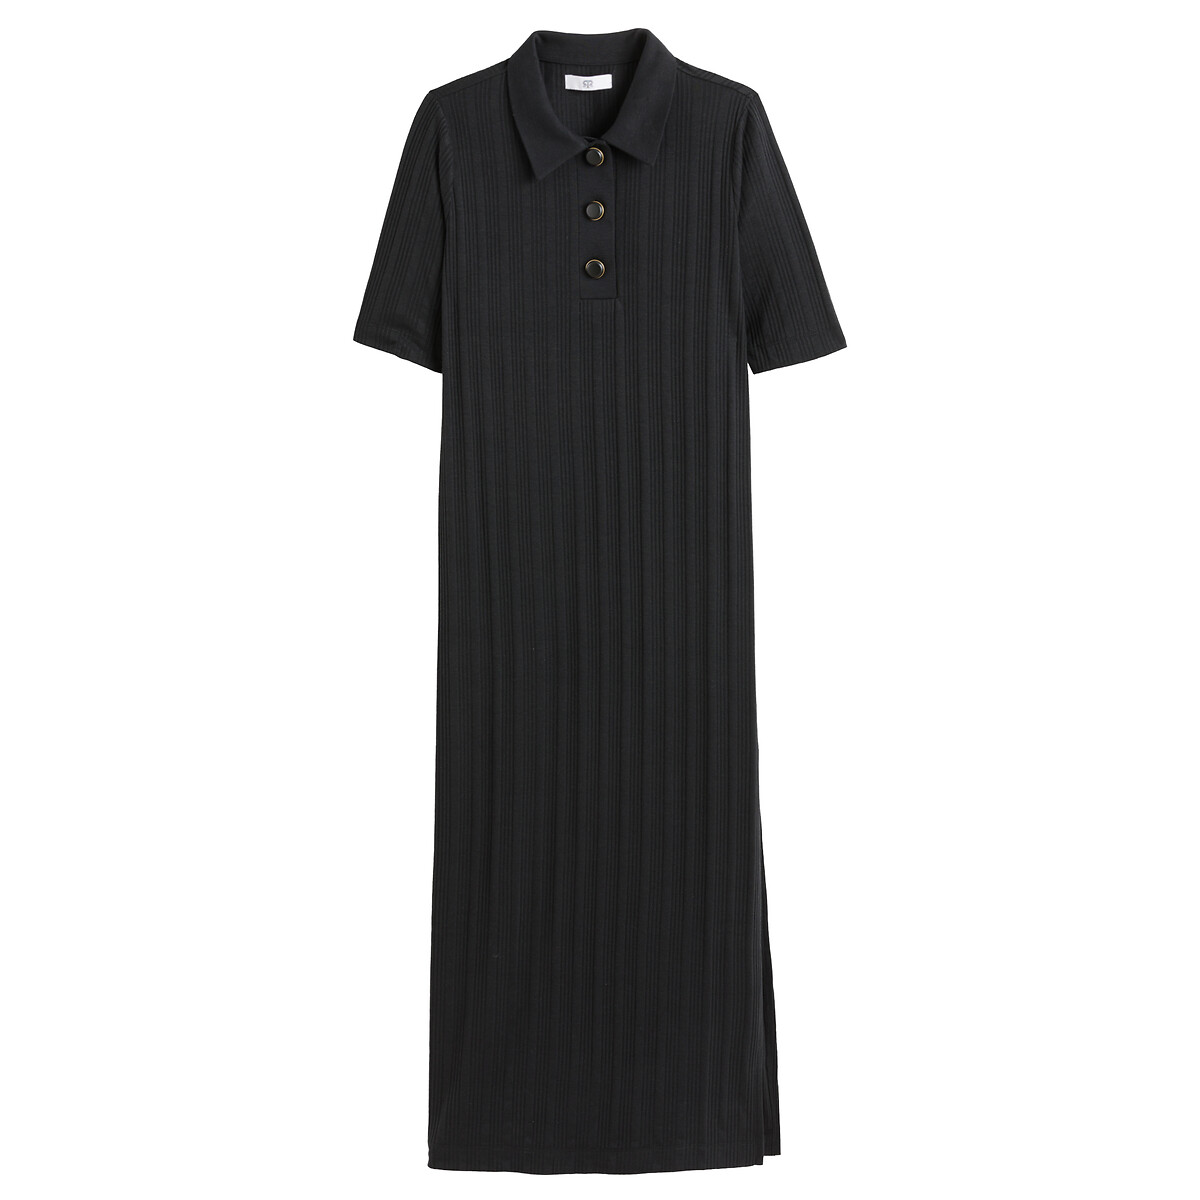 Платье Длинное с воротником поло из рифленого трикотажа S черный LaRedoute, размер S - фото 5